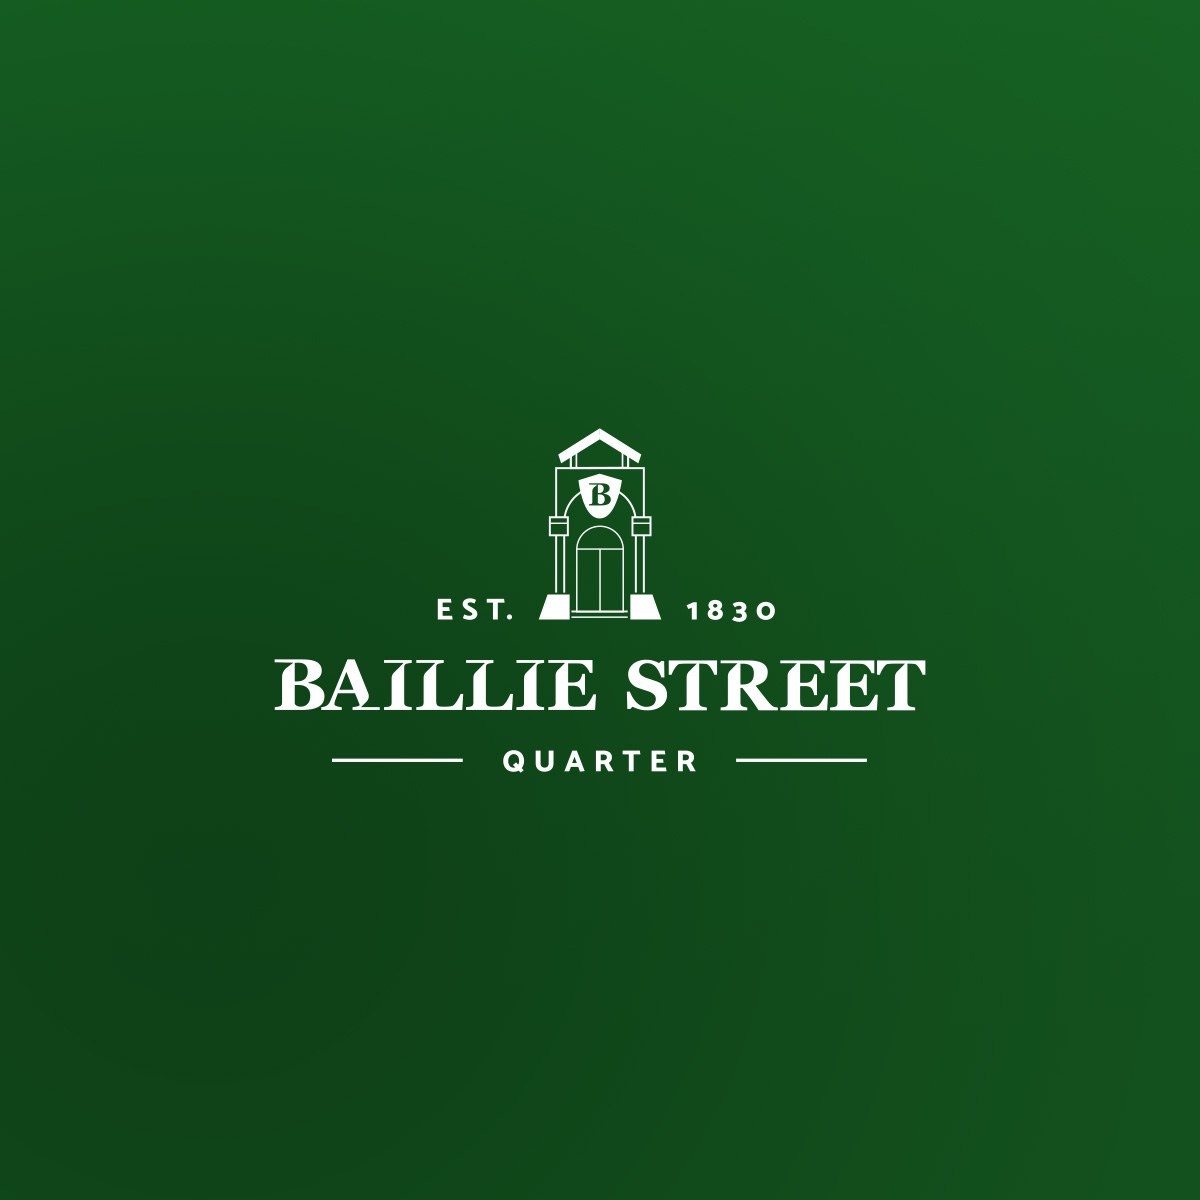 Baillie street quarter logo